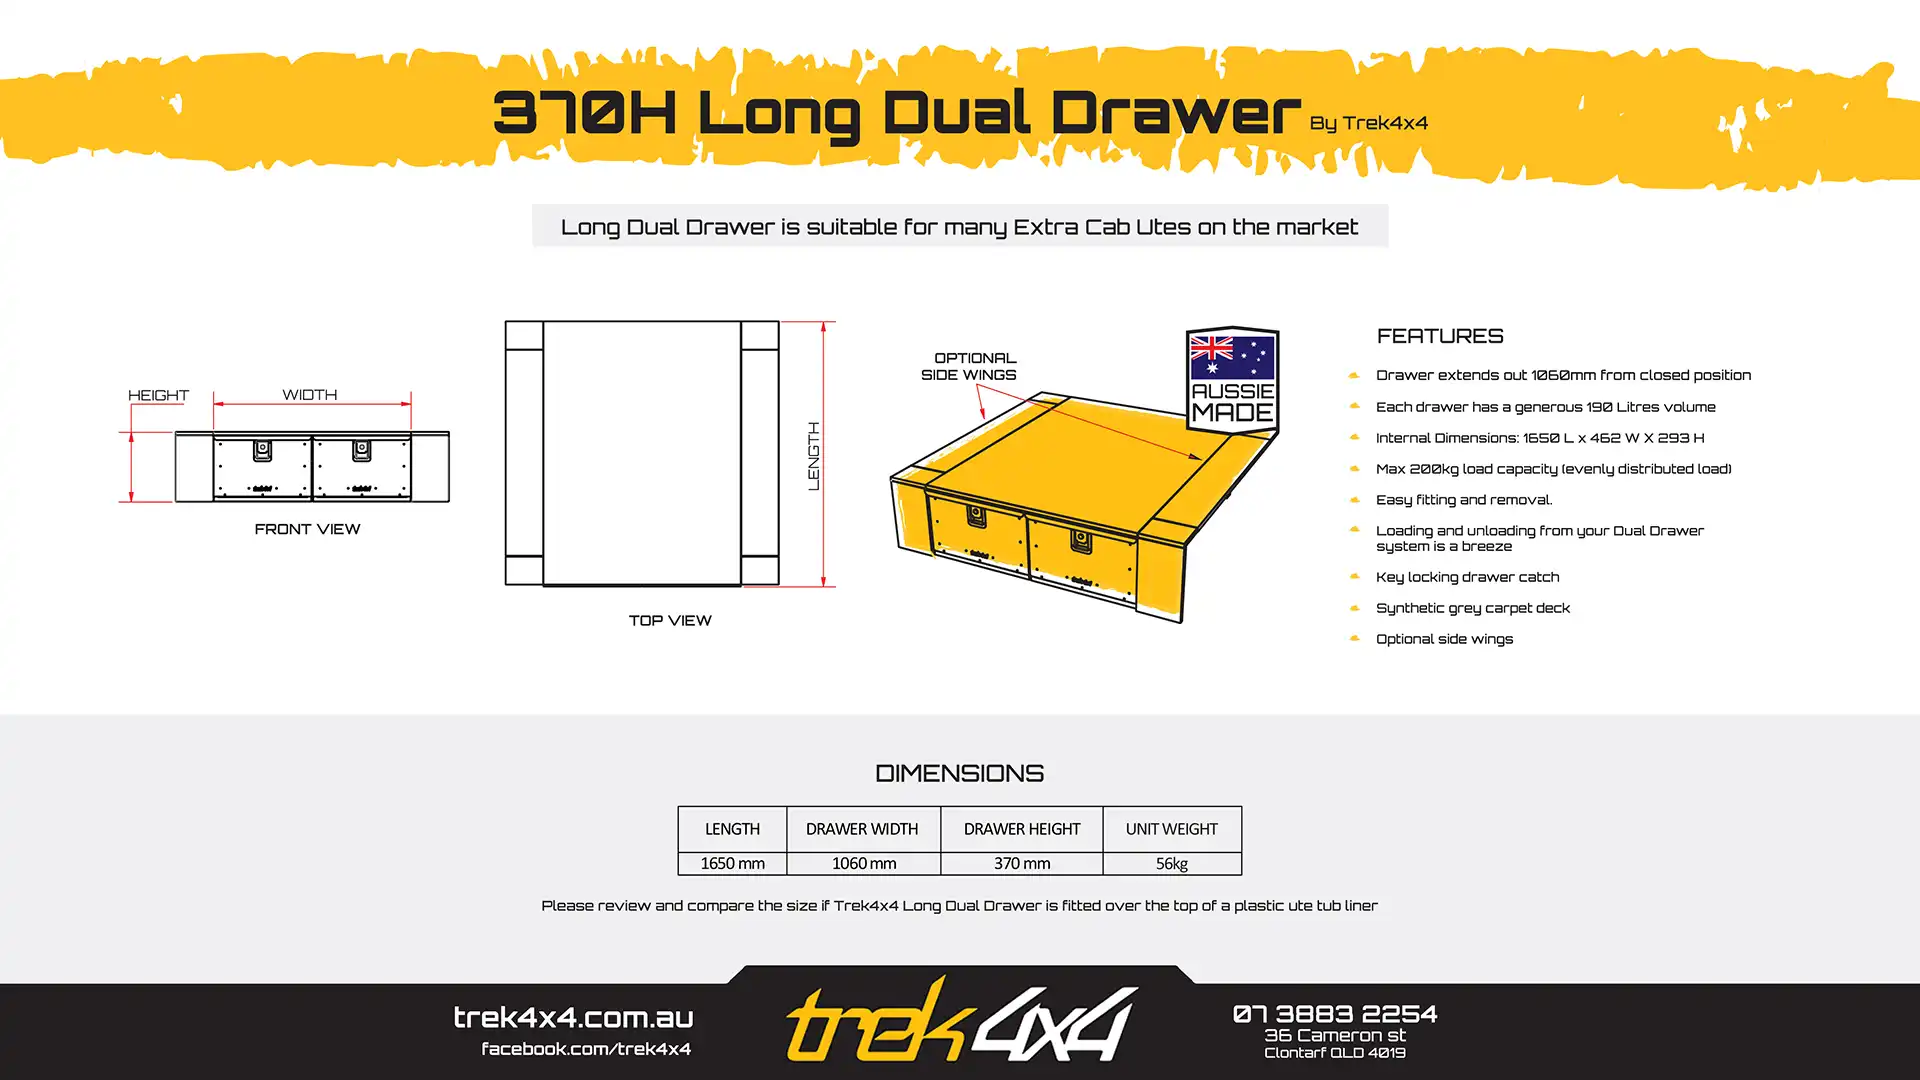 370 High Long-Dual Drawer